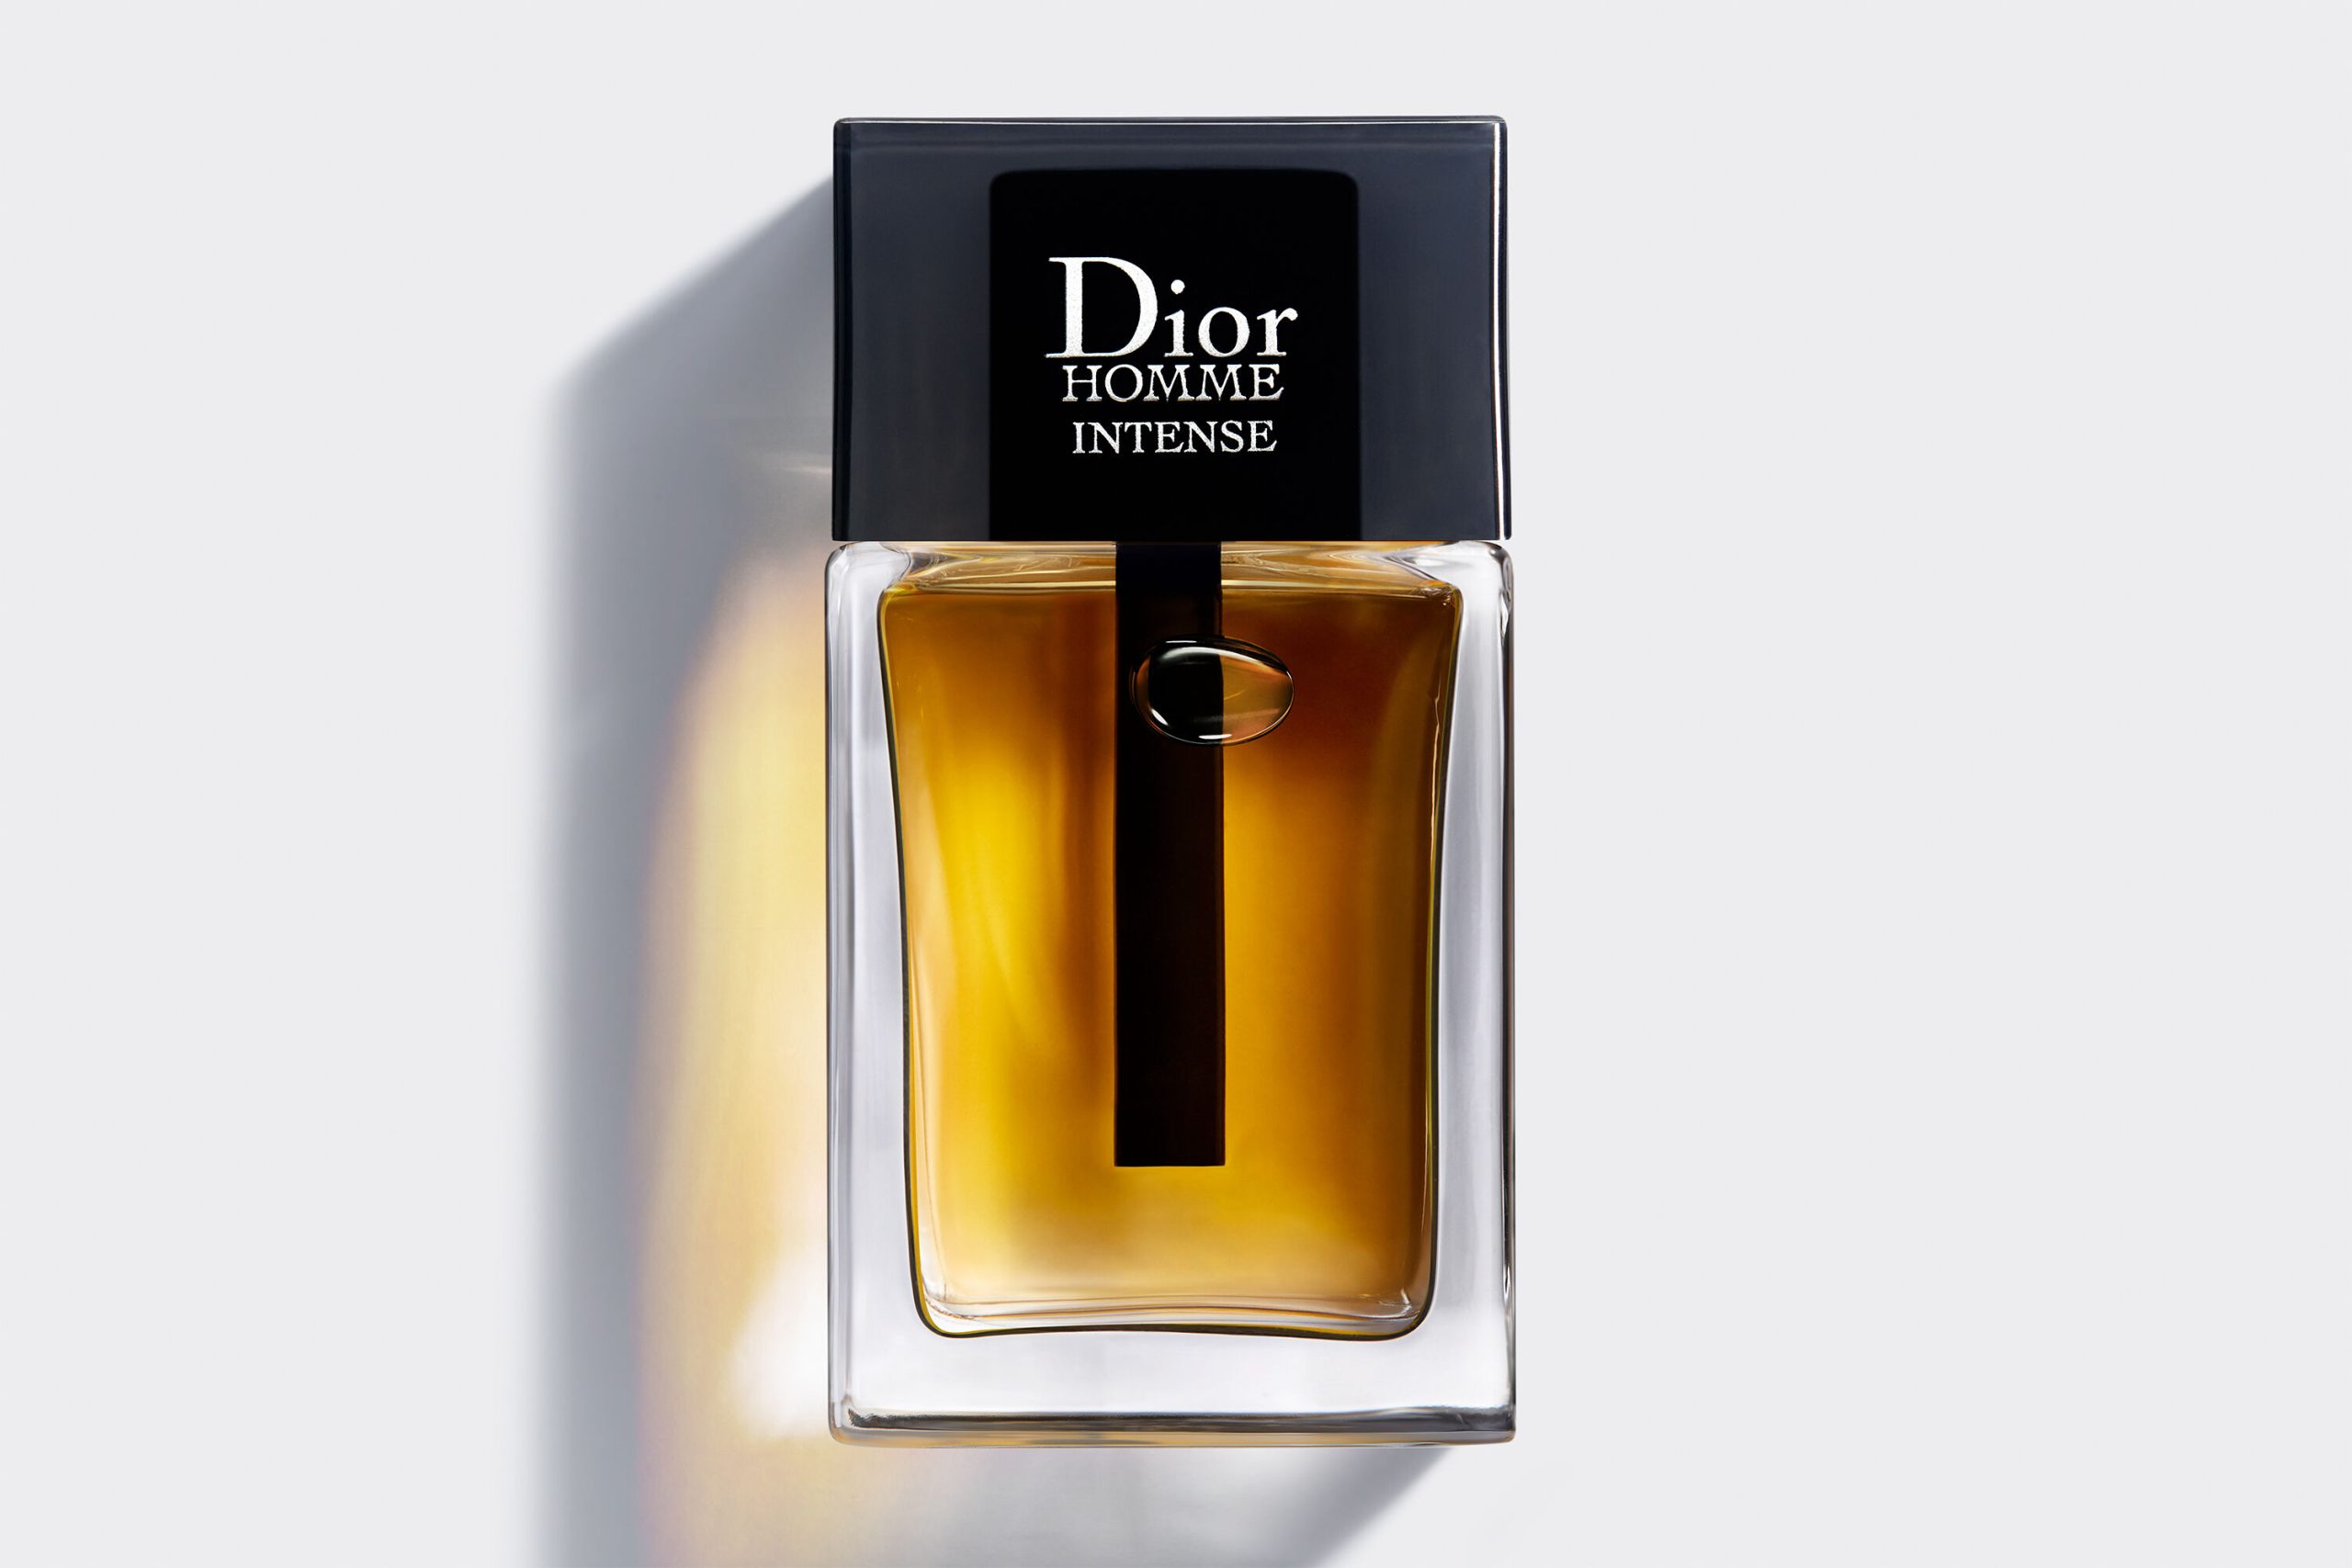 Christian Dior Homme Intense For Men Eau De Parfum EDP 100ml at Ratans Online Shop - Perfumes Wholesale and Retailer Fragrance